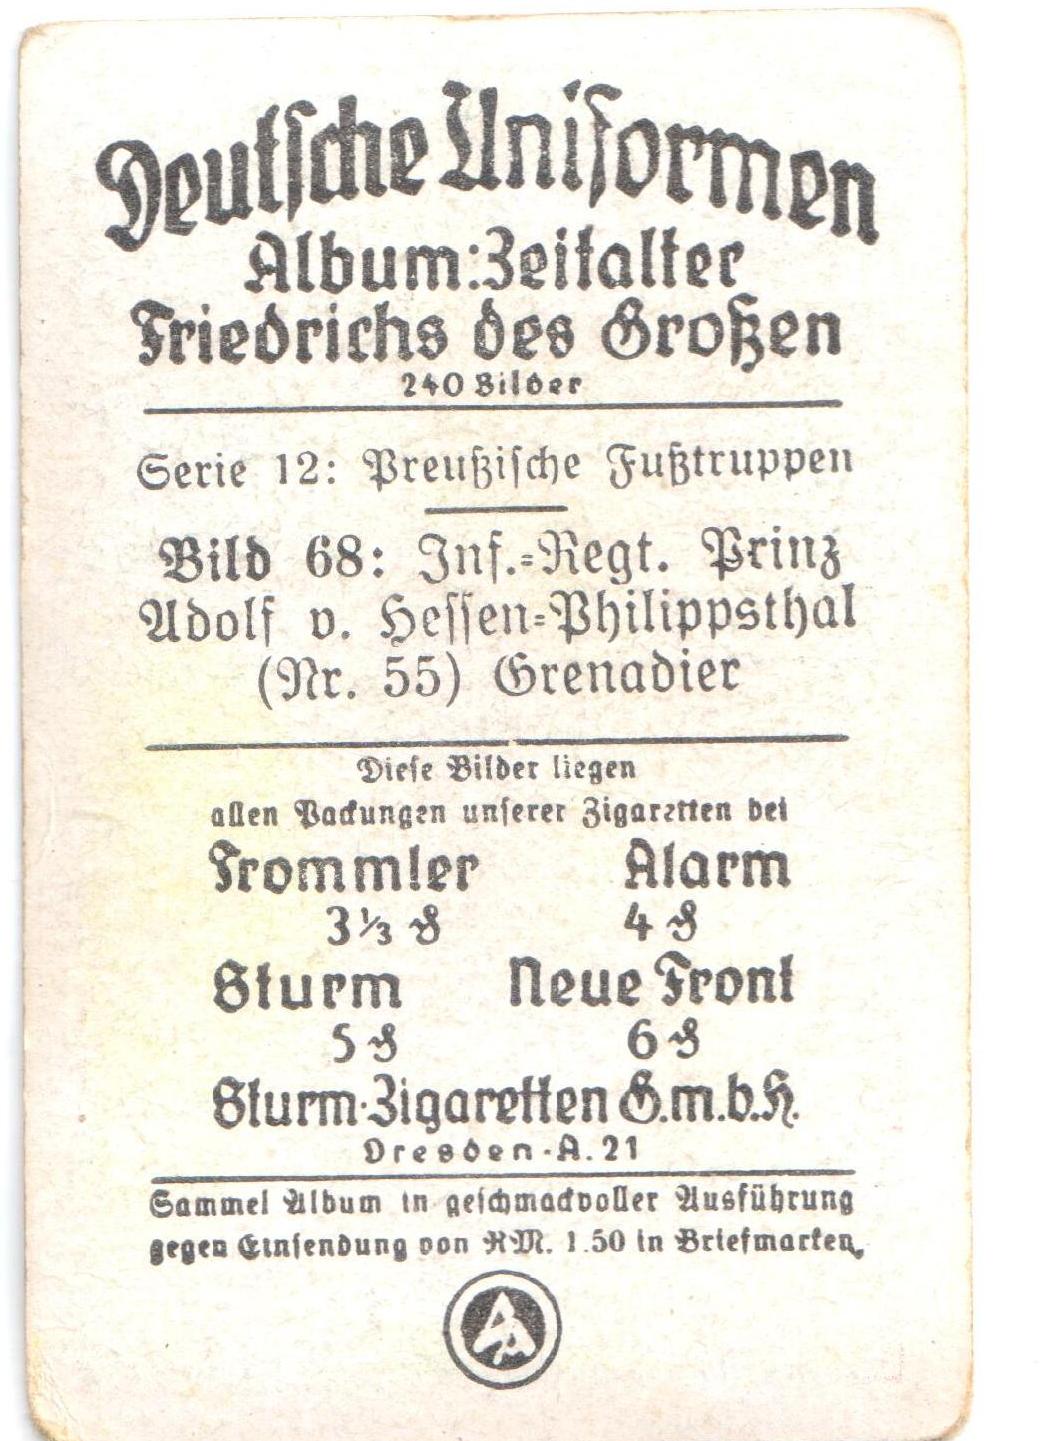 Открытка-вкладыш "Deutsche Uniformen. Album: Zeitalter Friedrichs des Groben.№ 68". Германия. 1930-1934 гг.